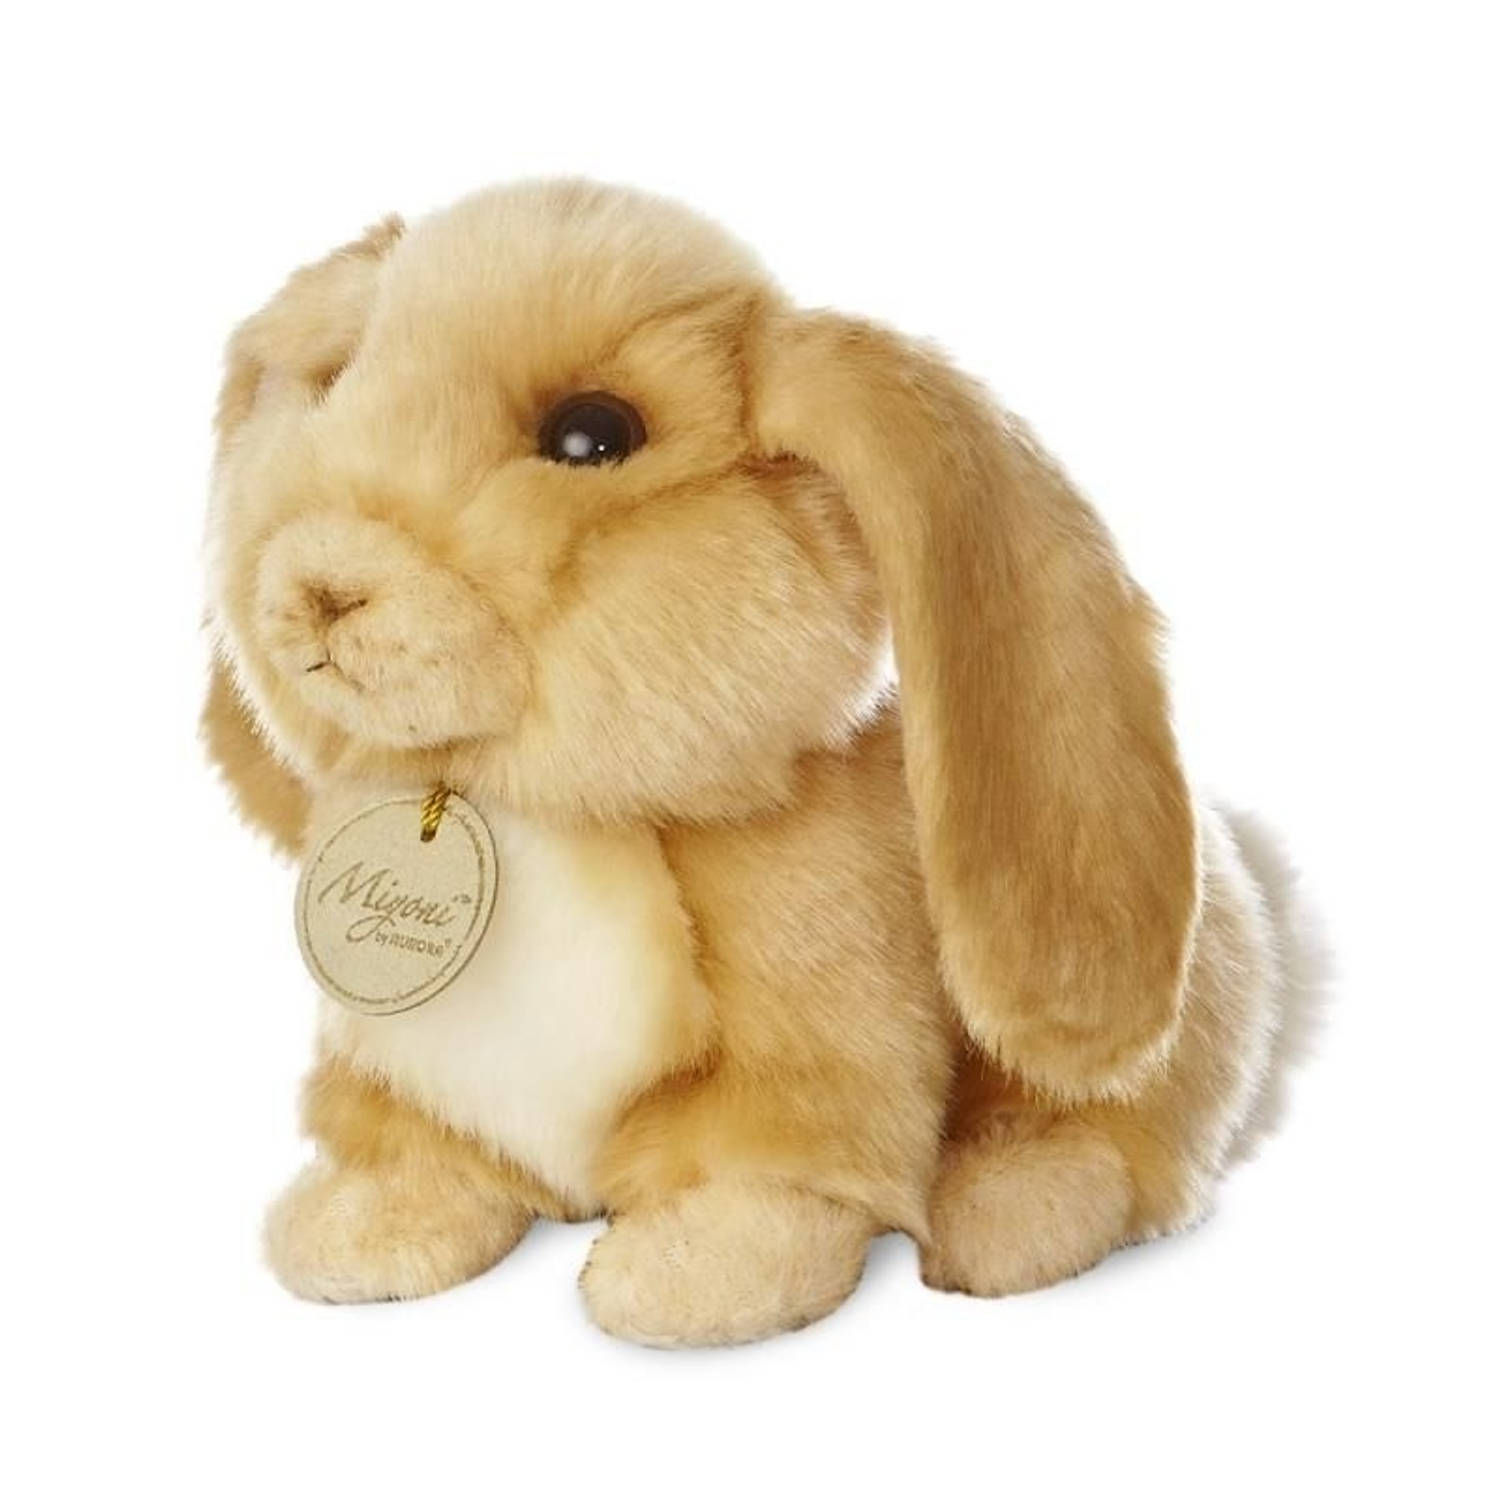 Zus voorspelling Toevallig Aurora knuffel Mini Yoni hangoor konijn bruin 20 cm | Blokker